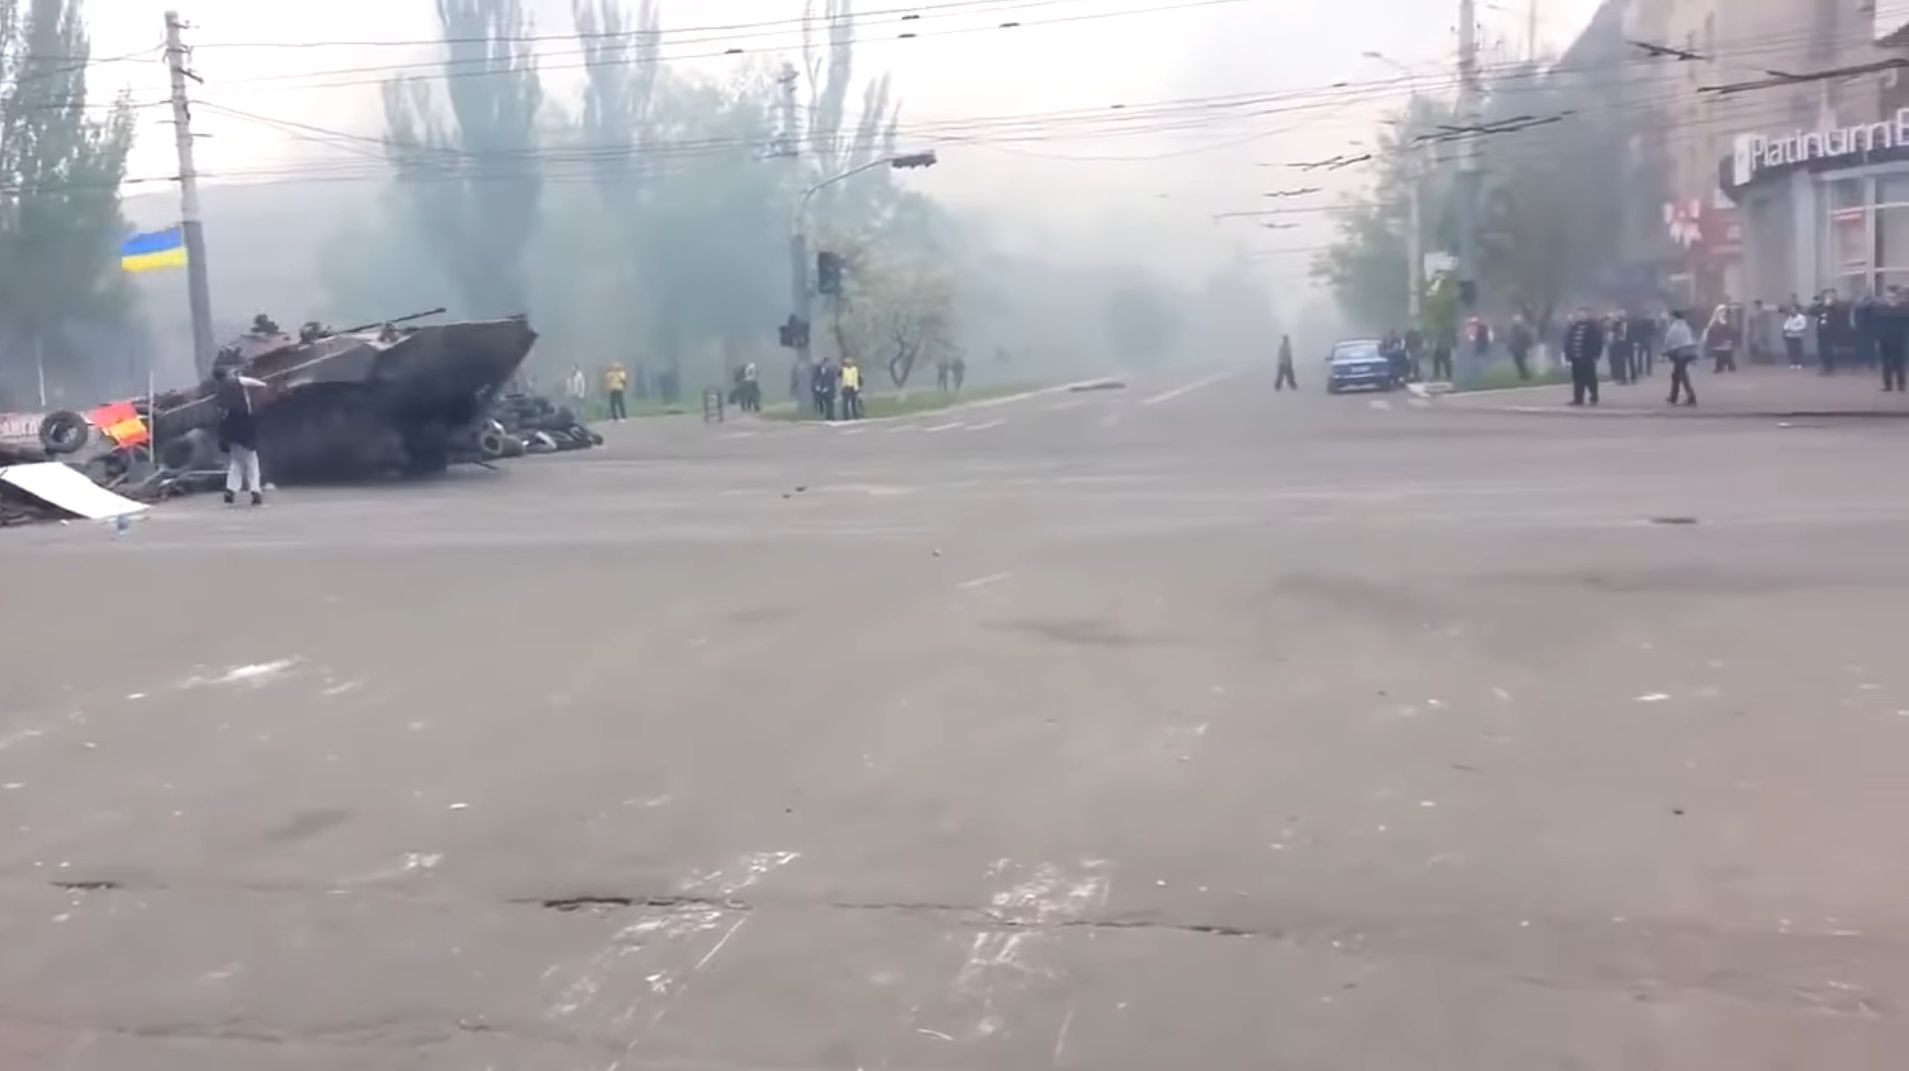 Кадры прорыва баррикад сепаратистов в Мариуполе украинскими БМП 9 мая 2014 года: "Маленькая, но очень важная победа для страны"